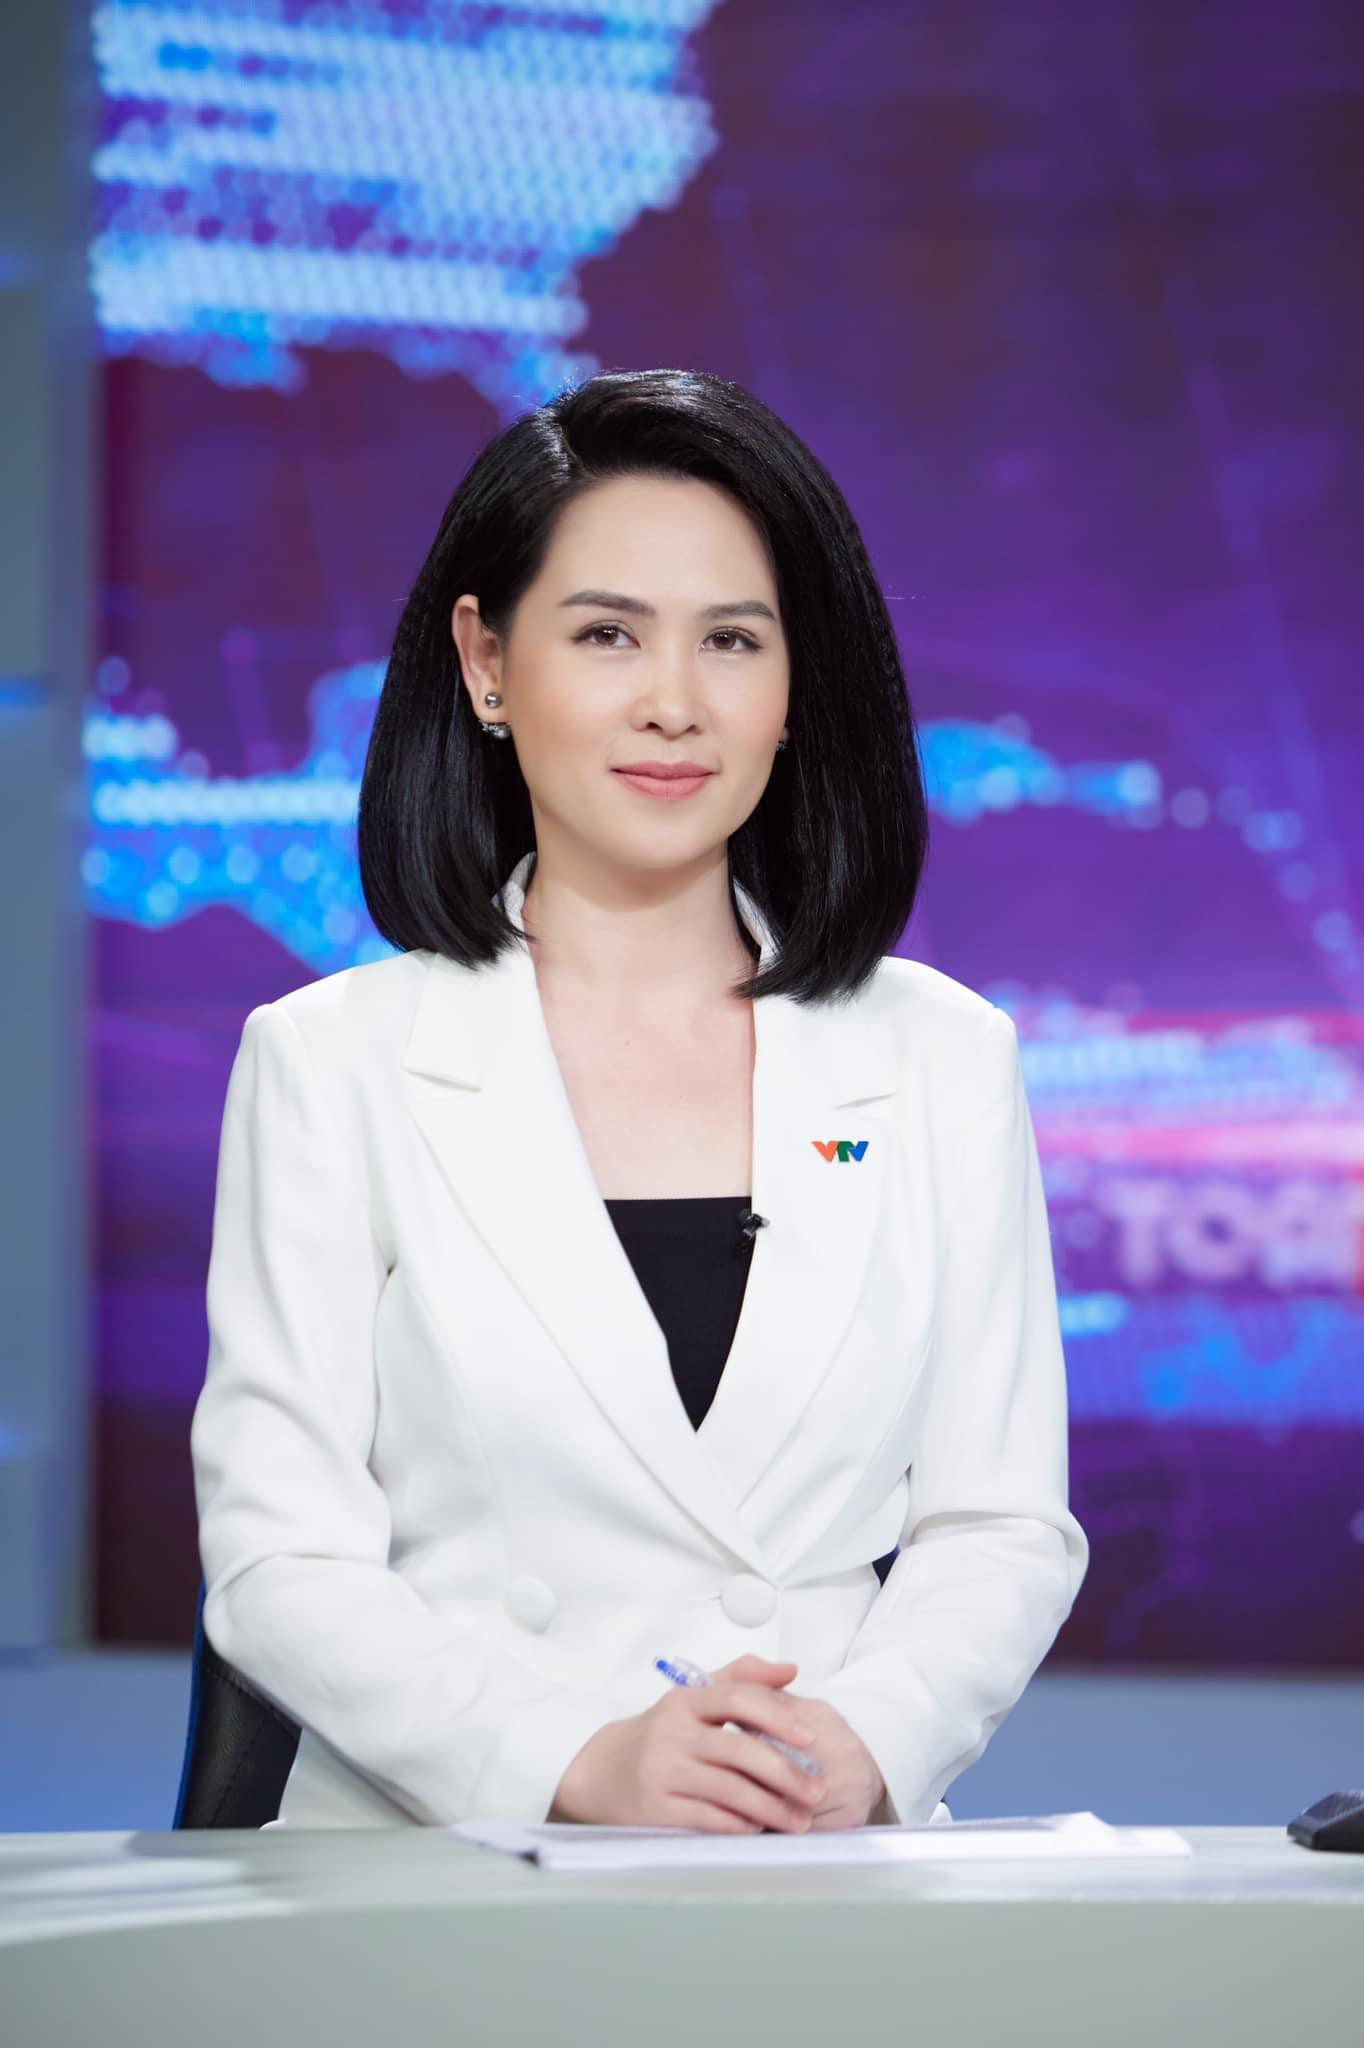 Đầu năm 2014, Thúy Hằng xuất hiện lần đầu tiên trên VTV1 trong bản tin Thời sự 19h. Hiện tại, BTV Thúy Hằng tiếp tục công việc tại VTV9- Đài truyền hình Việt Nam. Cô thường lên sóng trong chương trình thời sự tổng hợp Toàn cảnh 24H của VTV9.